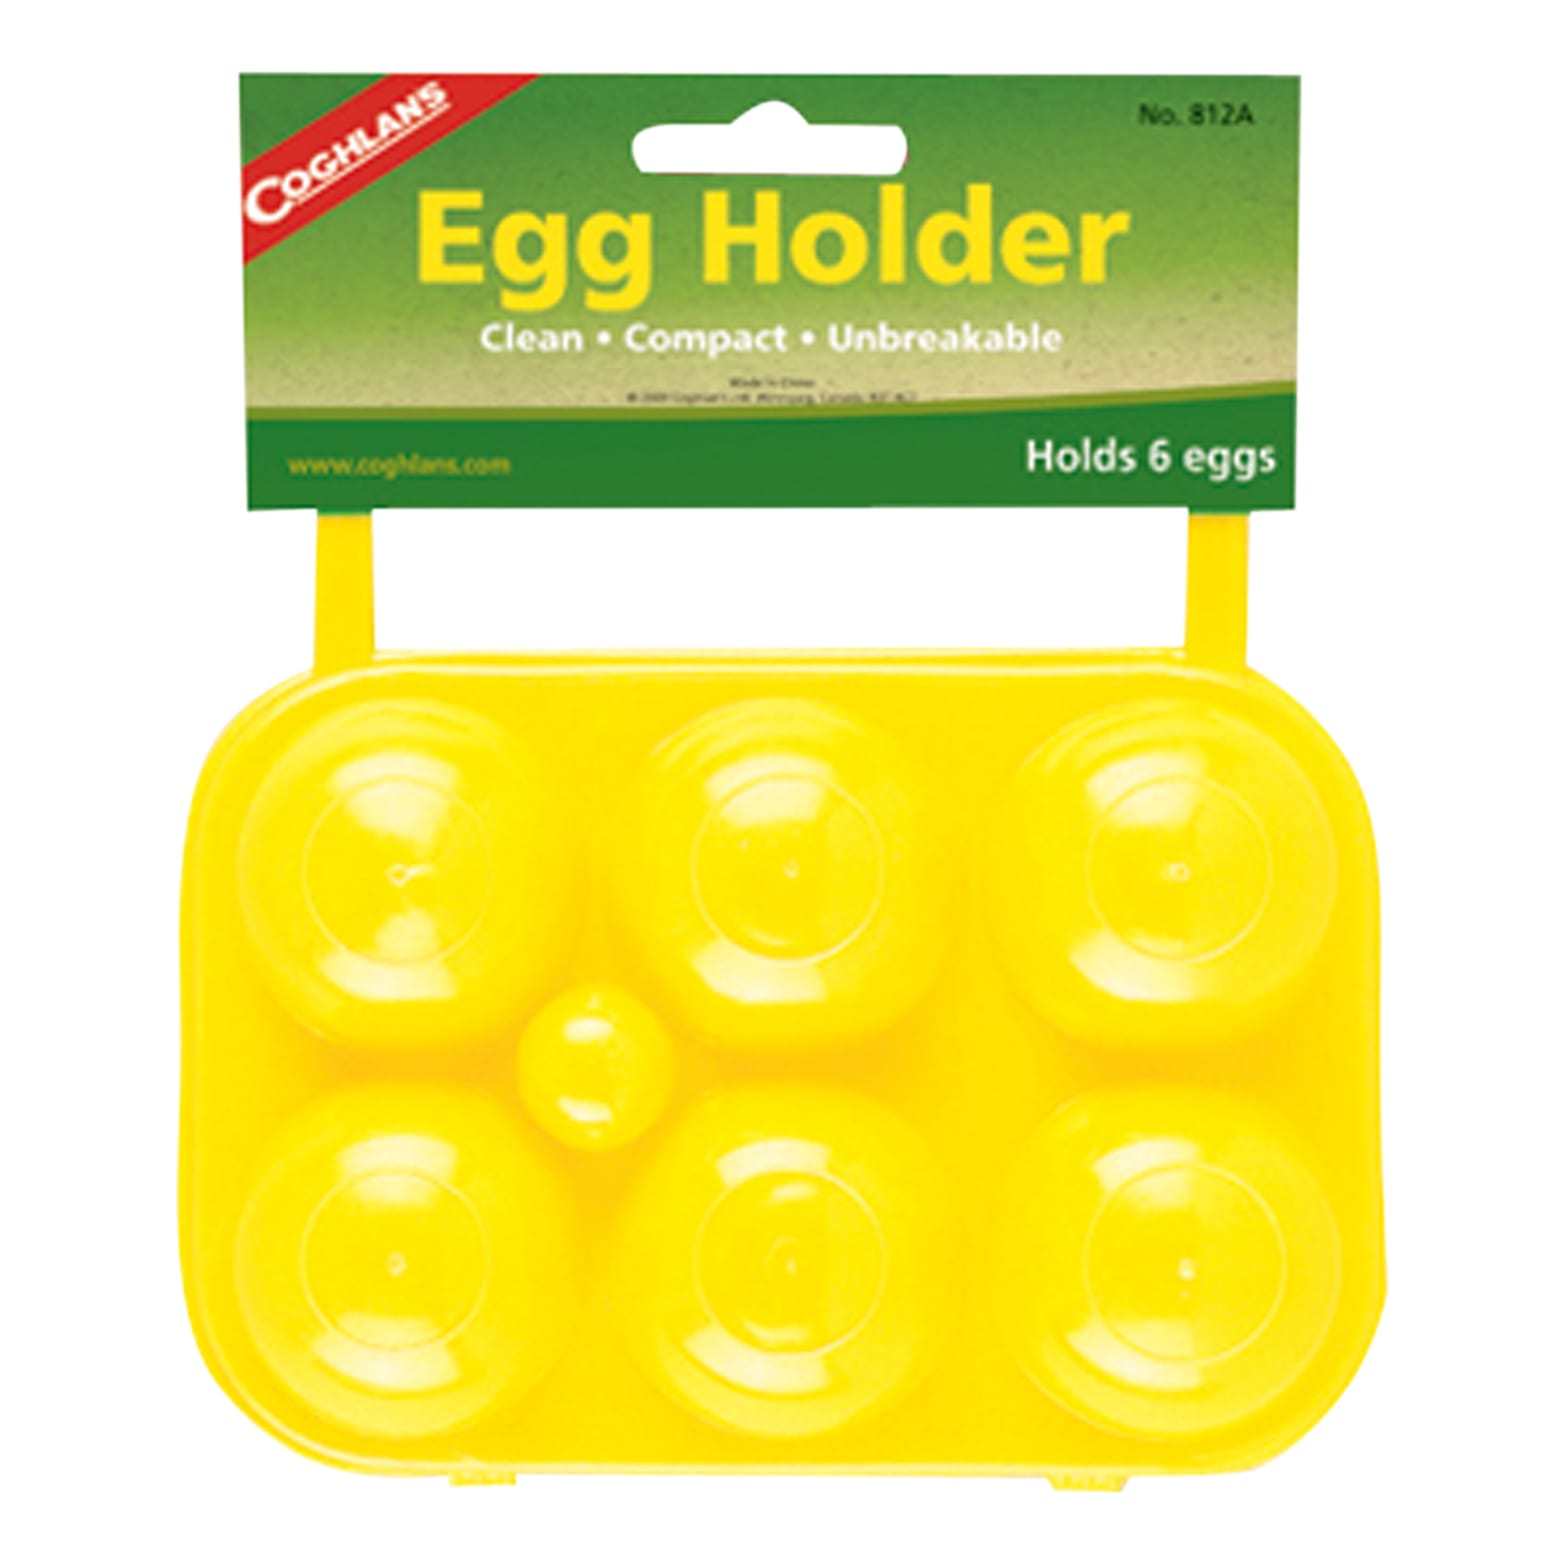 Coghlan's Egg Holder - 6 Egg